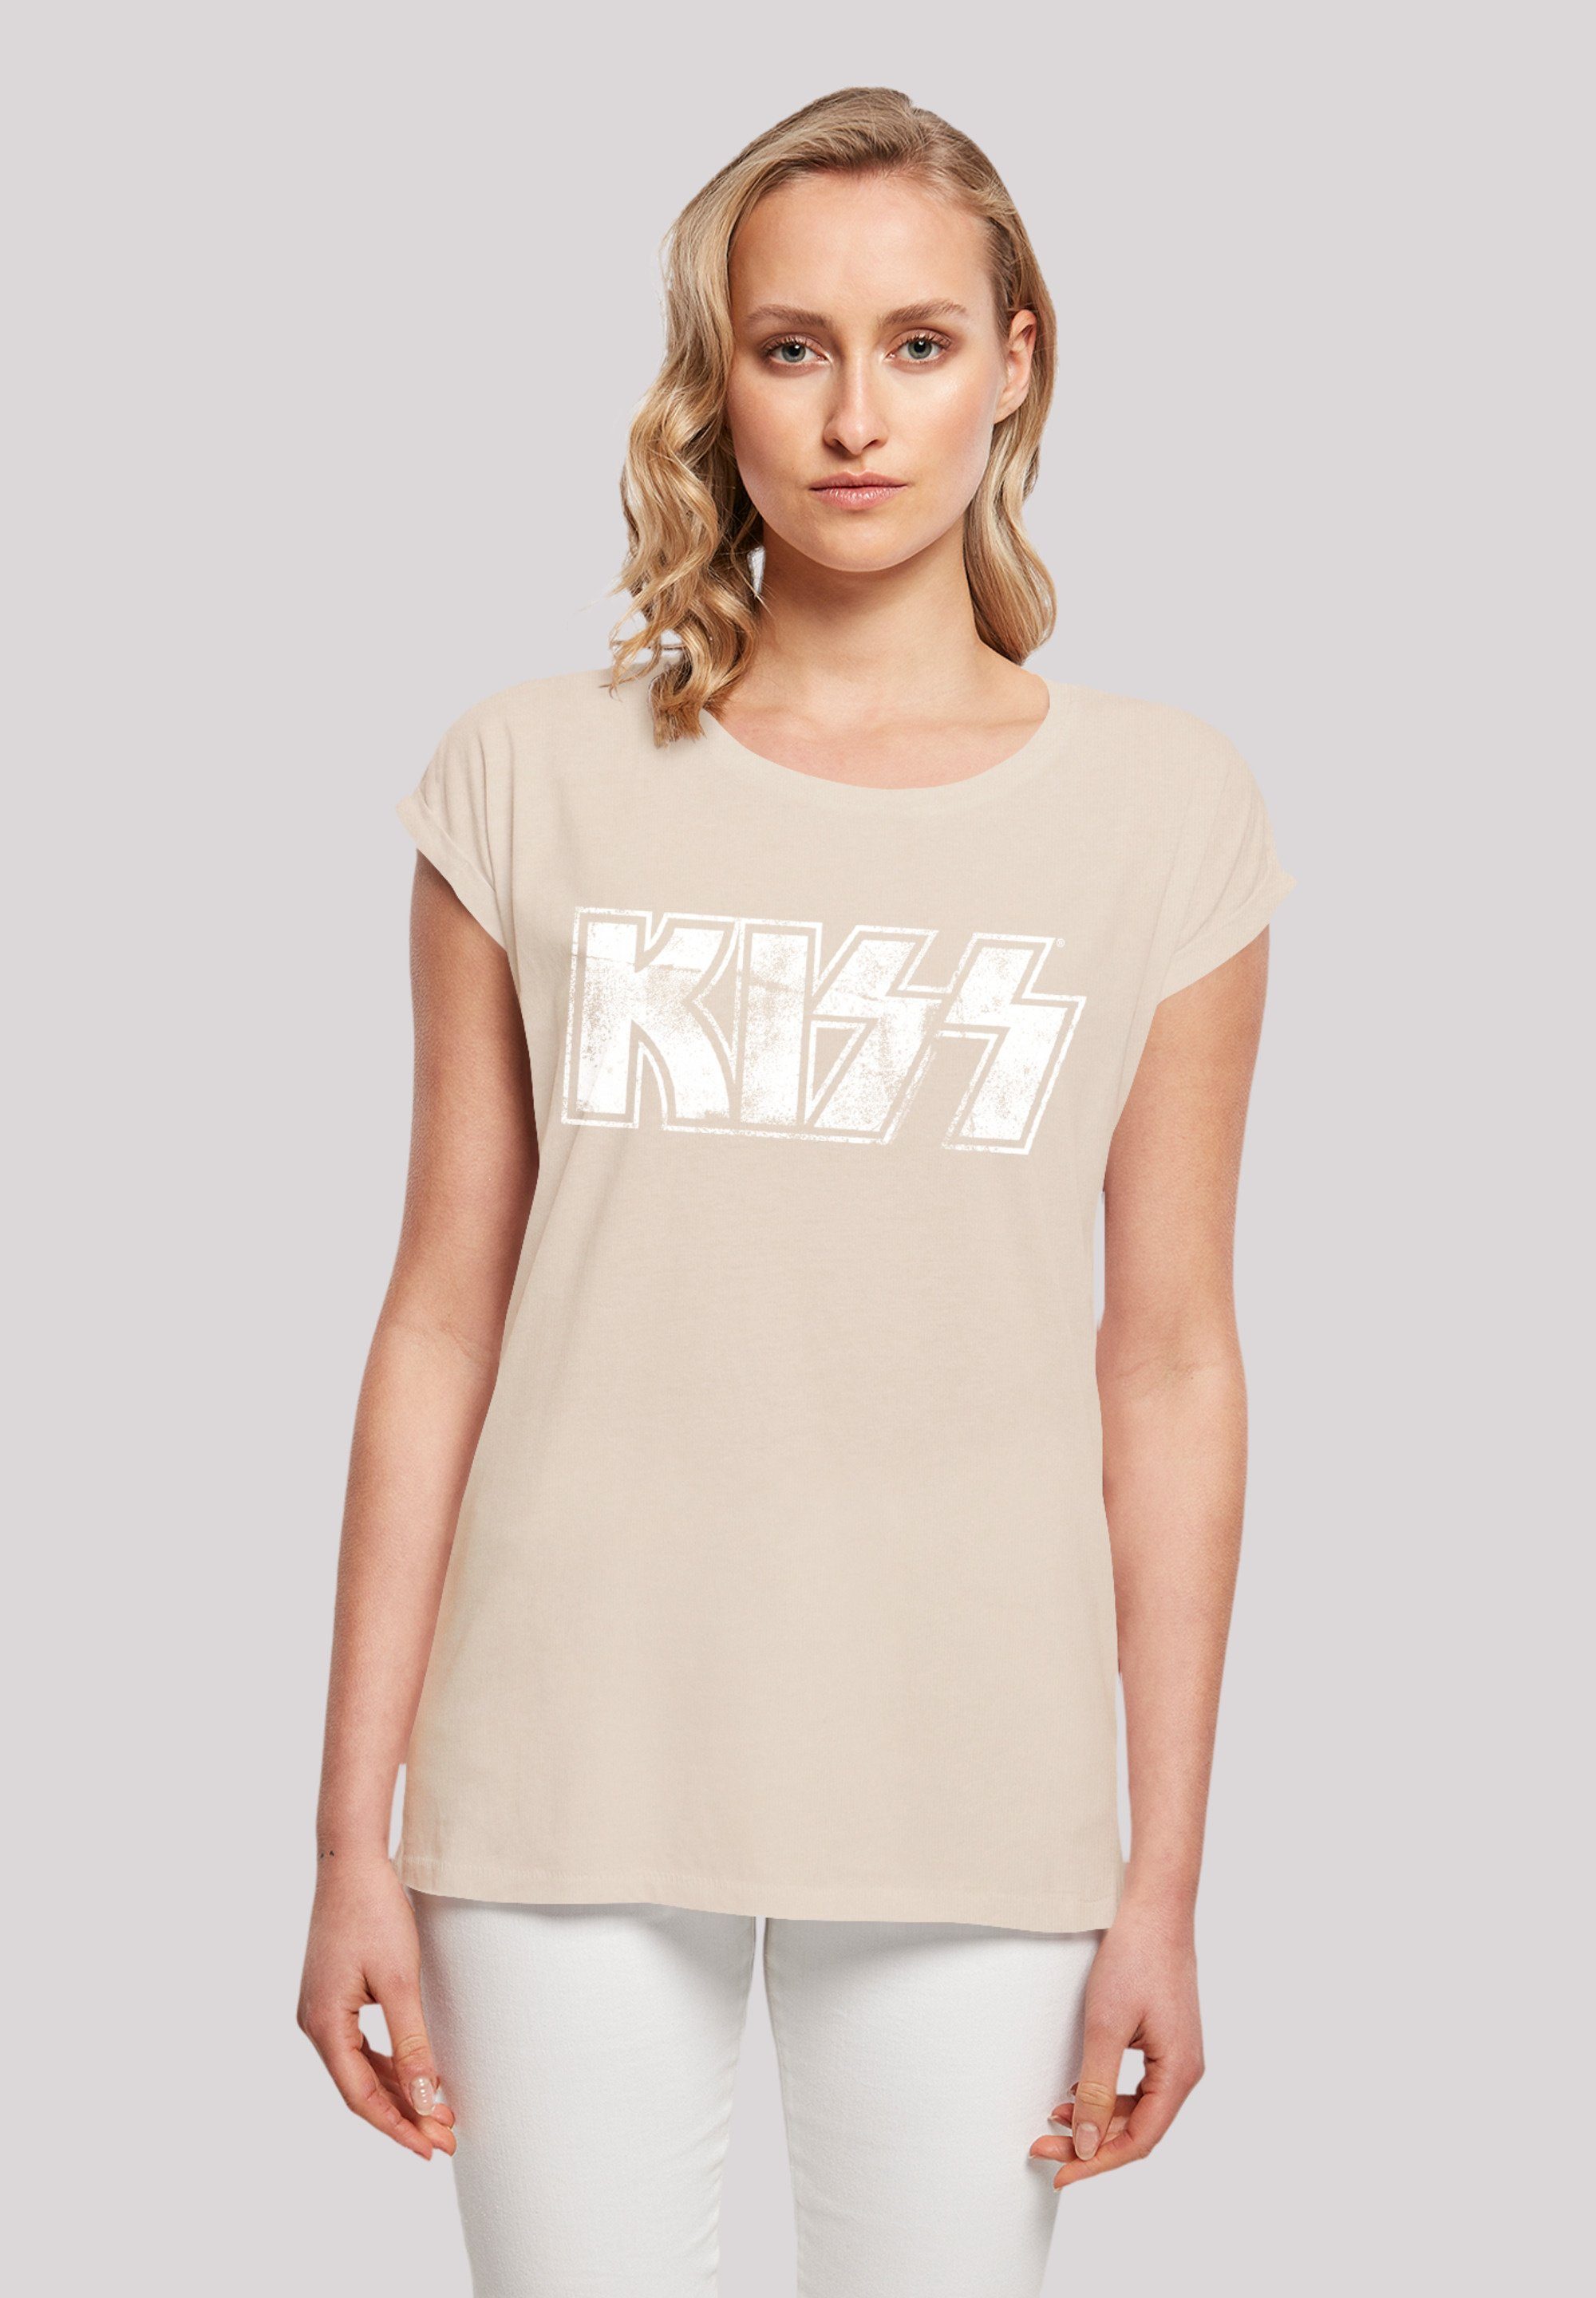 By T-Shirt F4NT4STIC Sehr Rock Premium Off, Baumwollstoff Musik, mit Kiss Tragekomfort hohem Vintage Rock weicher Band Logo Qualität,